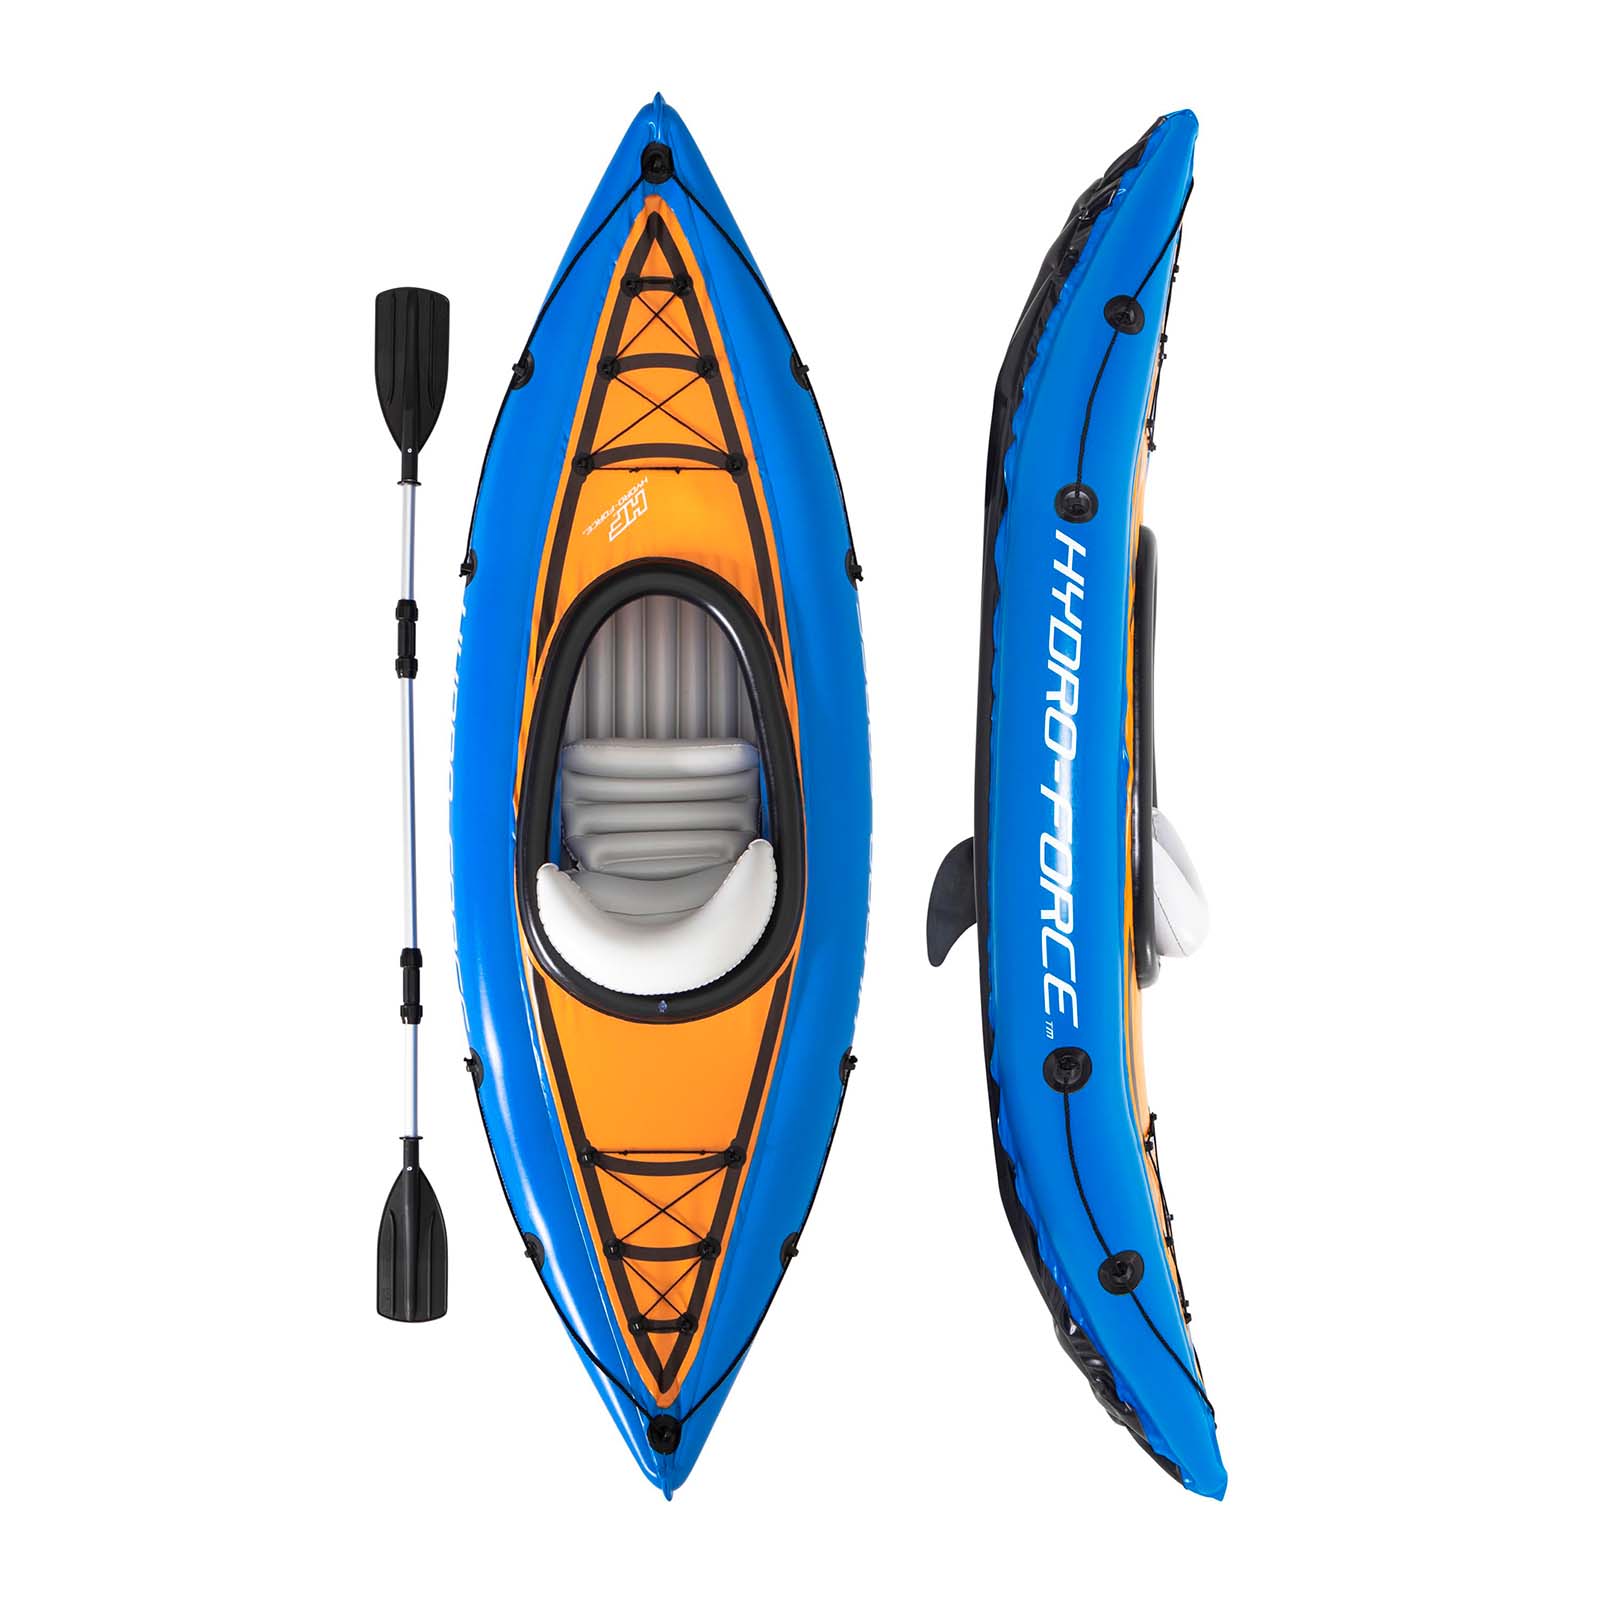 Conjunto de kayak inflable Cove Champion de Hydro-Force